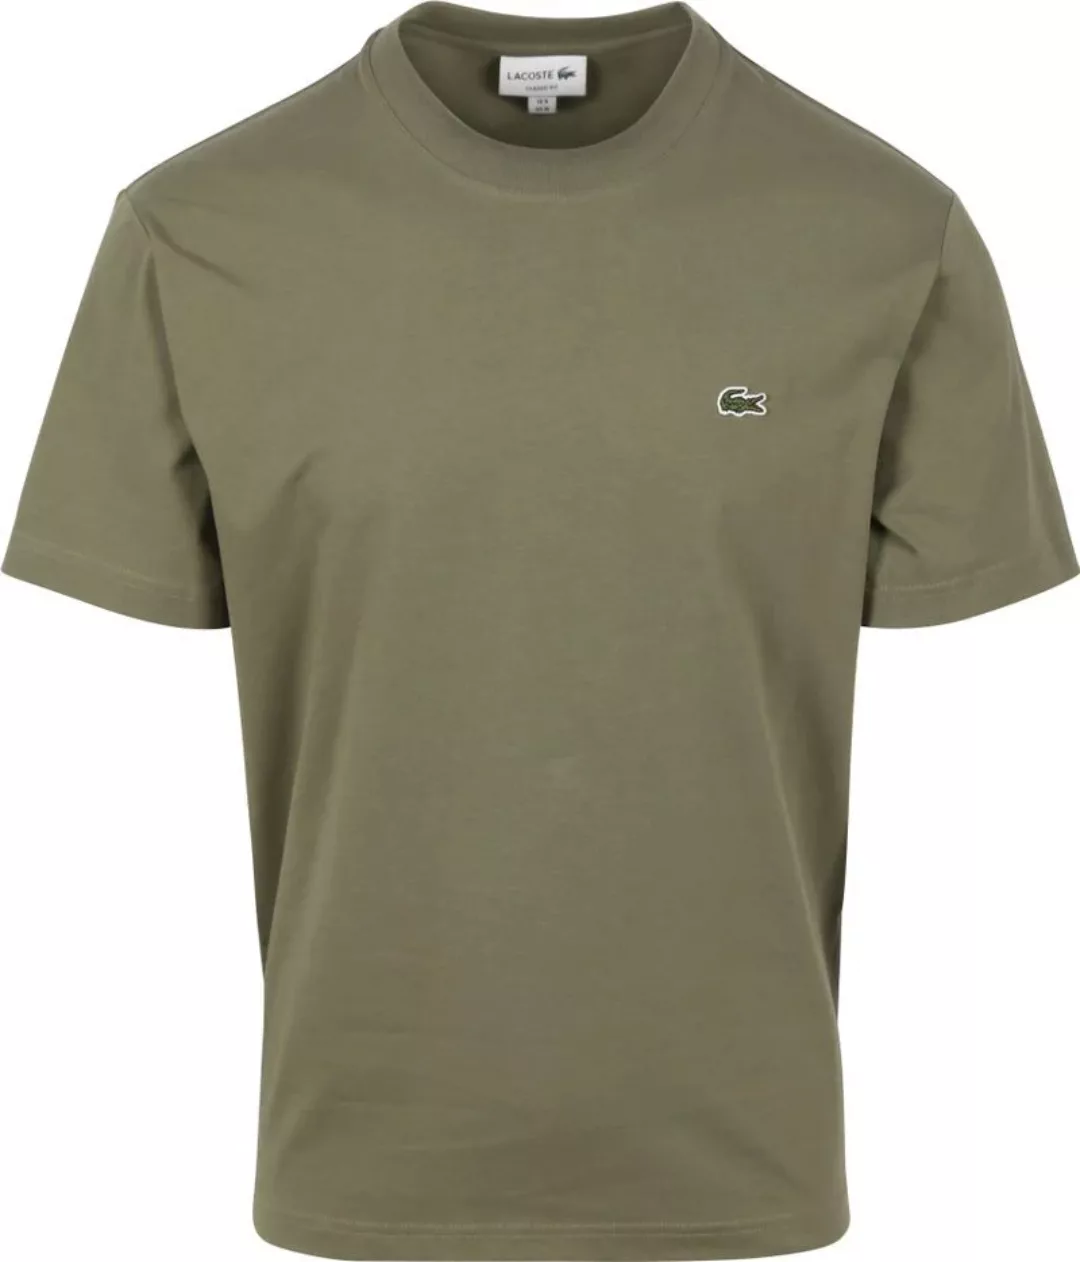 Lacoste T-Shirt Olivgrün - Größe S günstig online kaufen